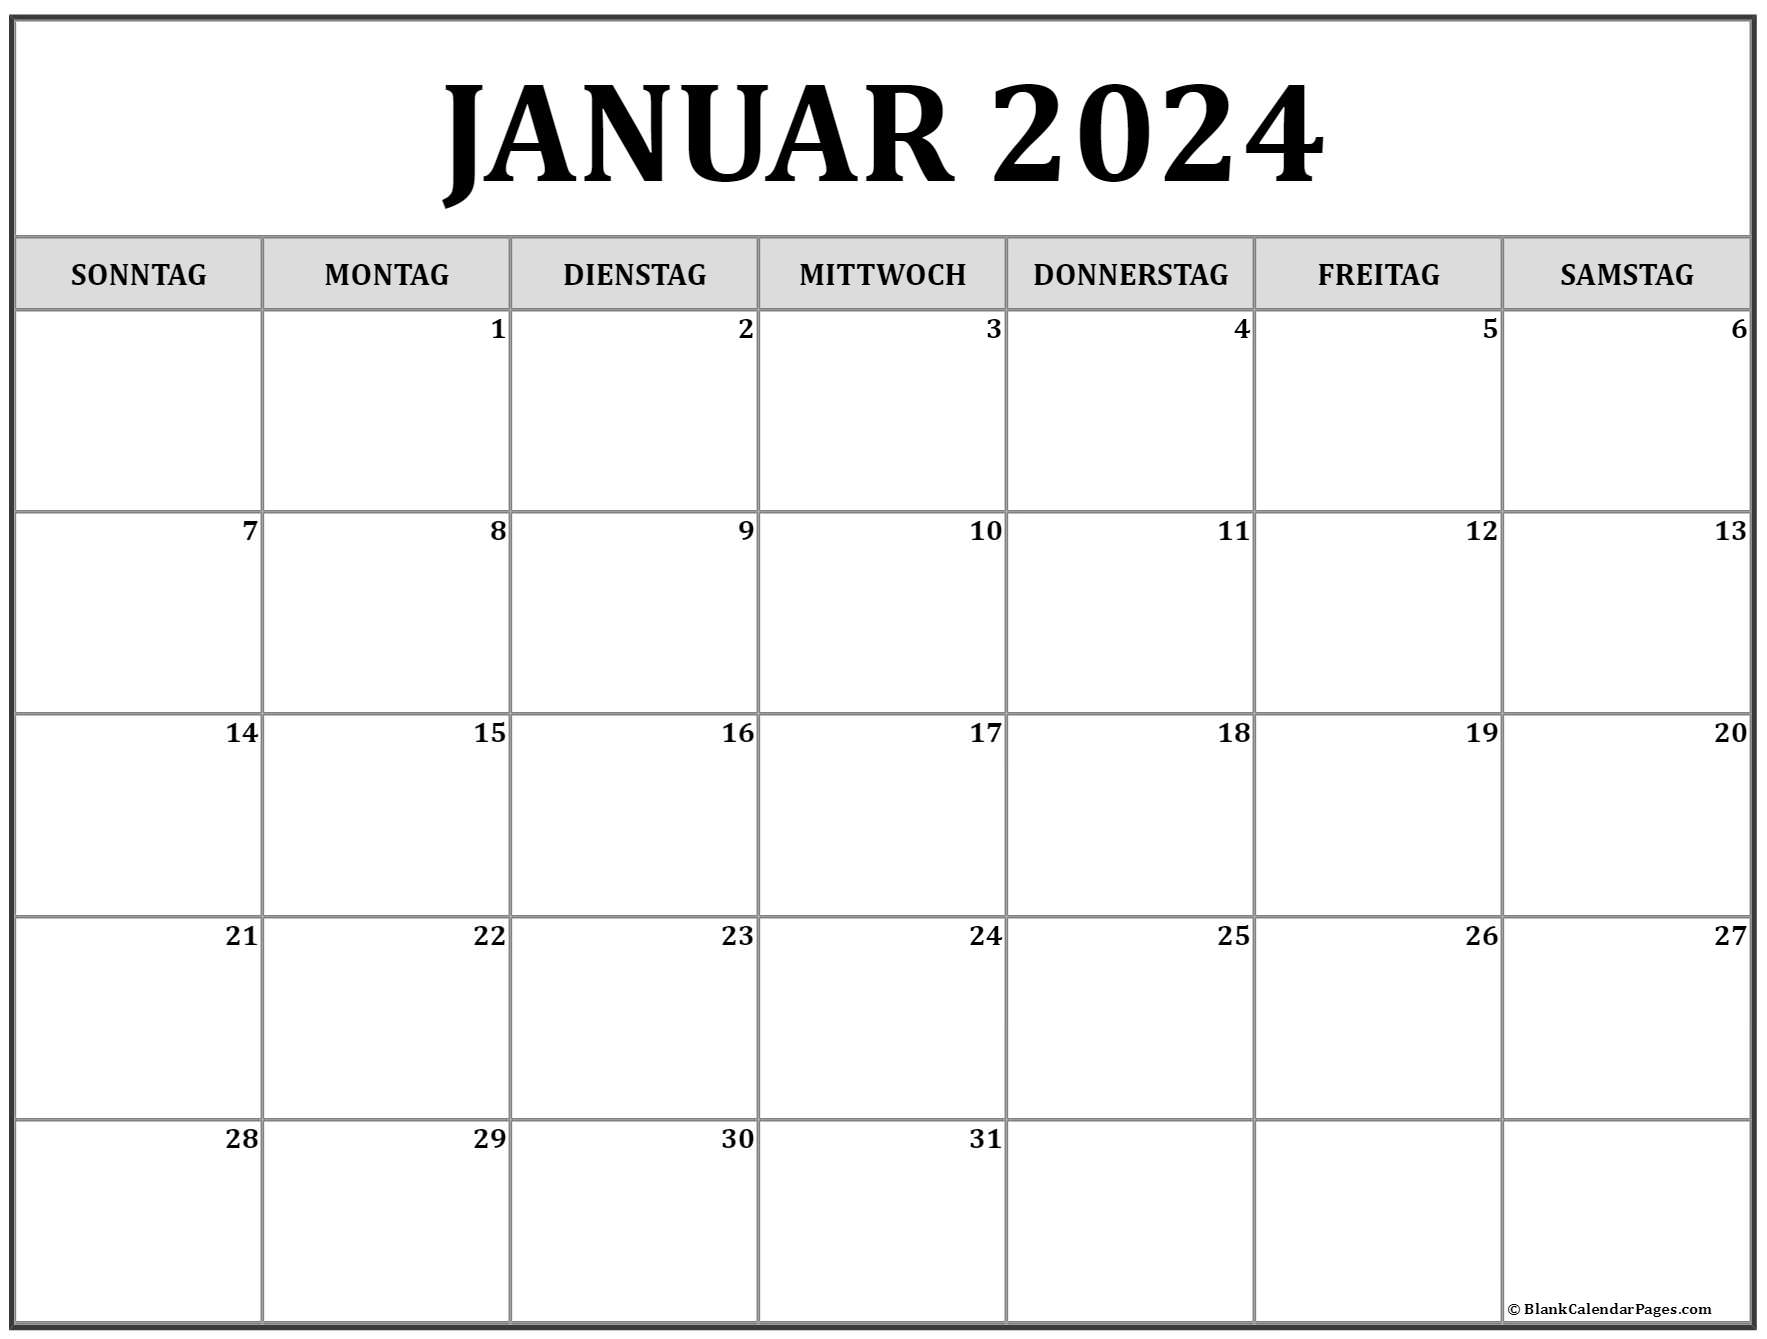  Januar  2022  kalender  kalender  2022 